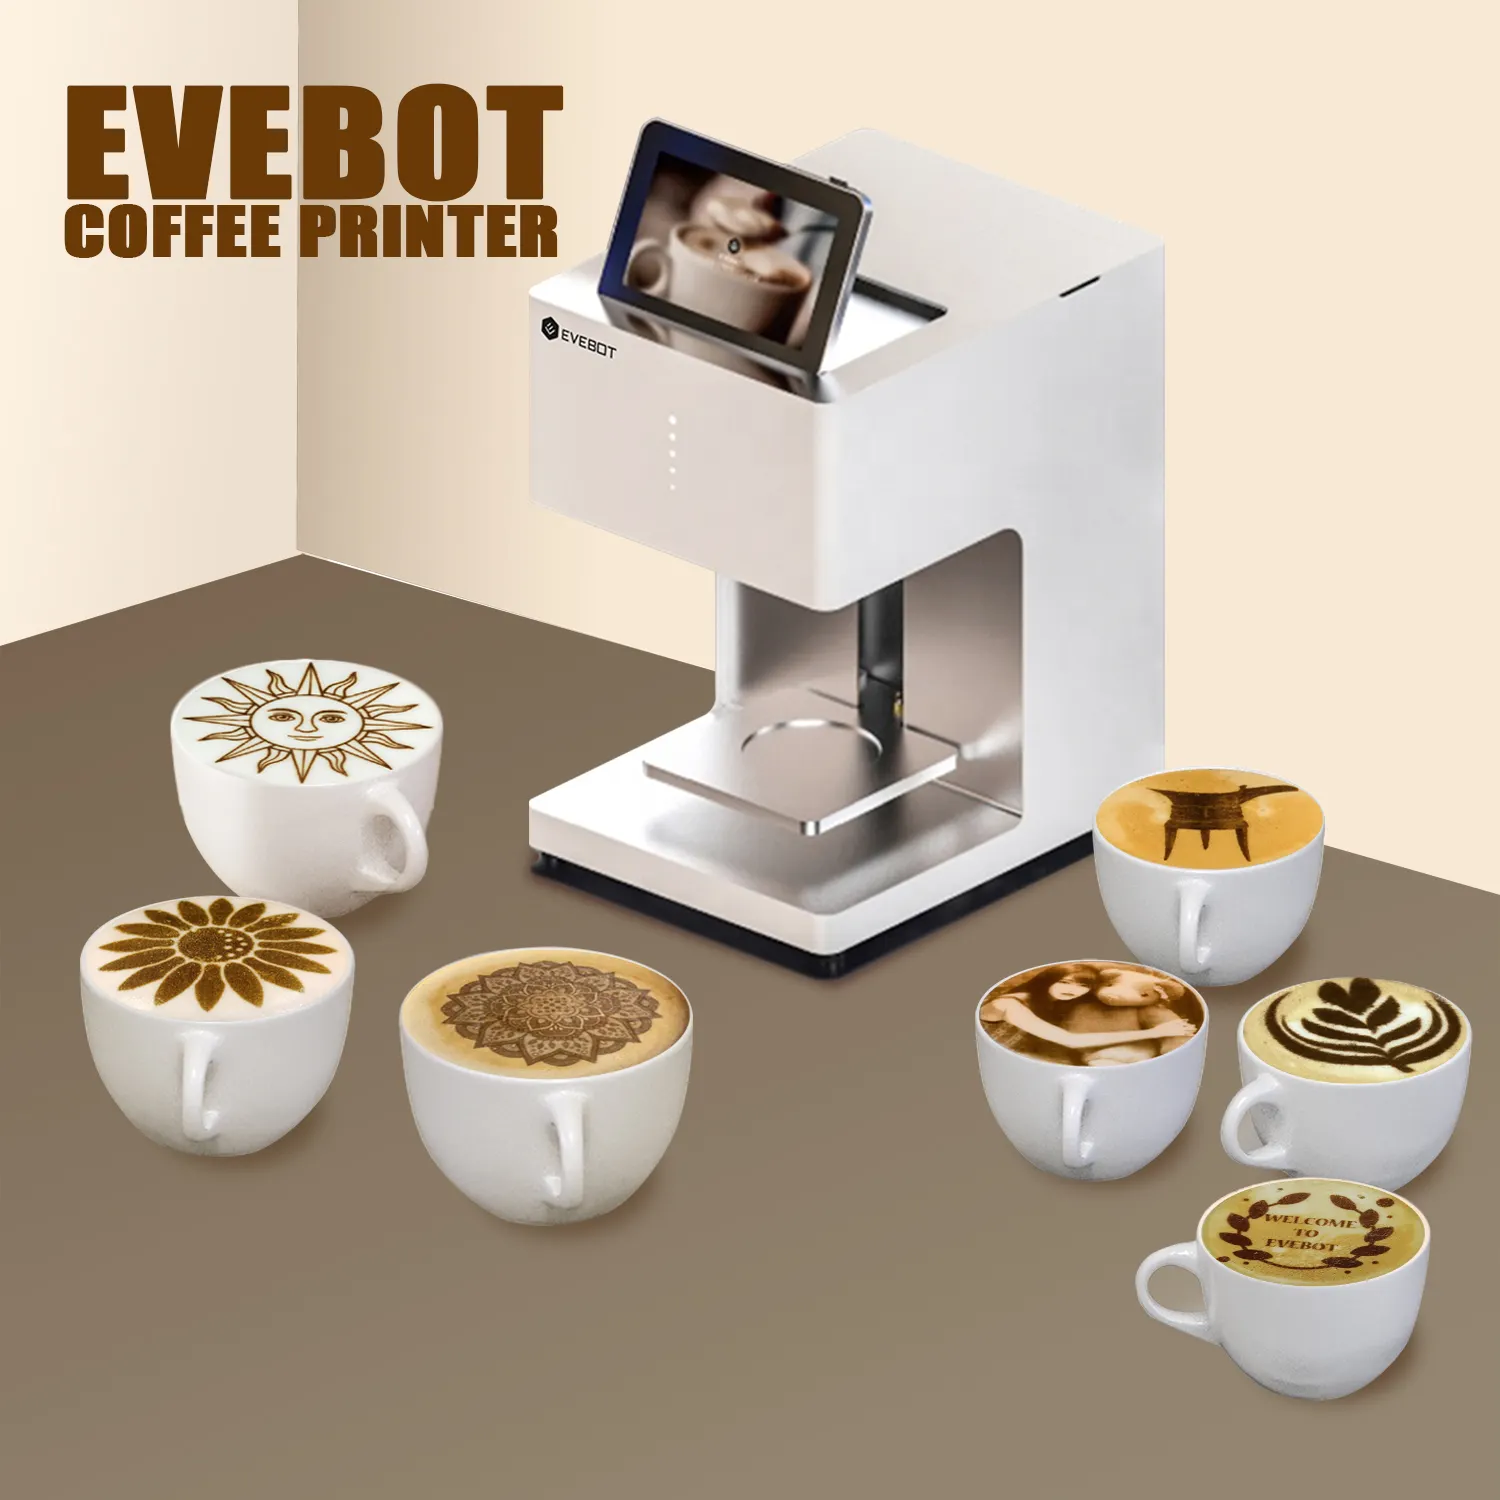 EVEBOT EB-Pro Kaffee Latte Art Maschine Küche Restaurant und Hotel ausstattung Hotel bedarf Cafe Verwenden Sie Lebensmittel drucker Kaffee Kunst